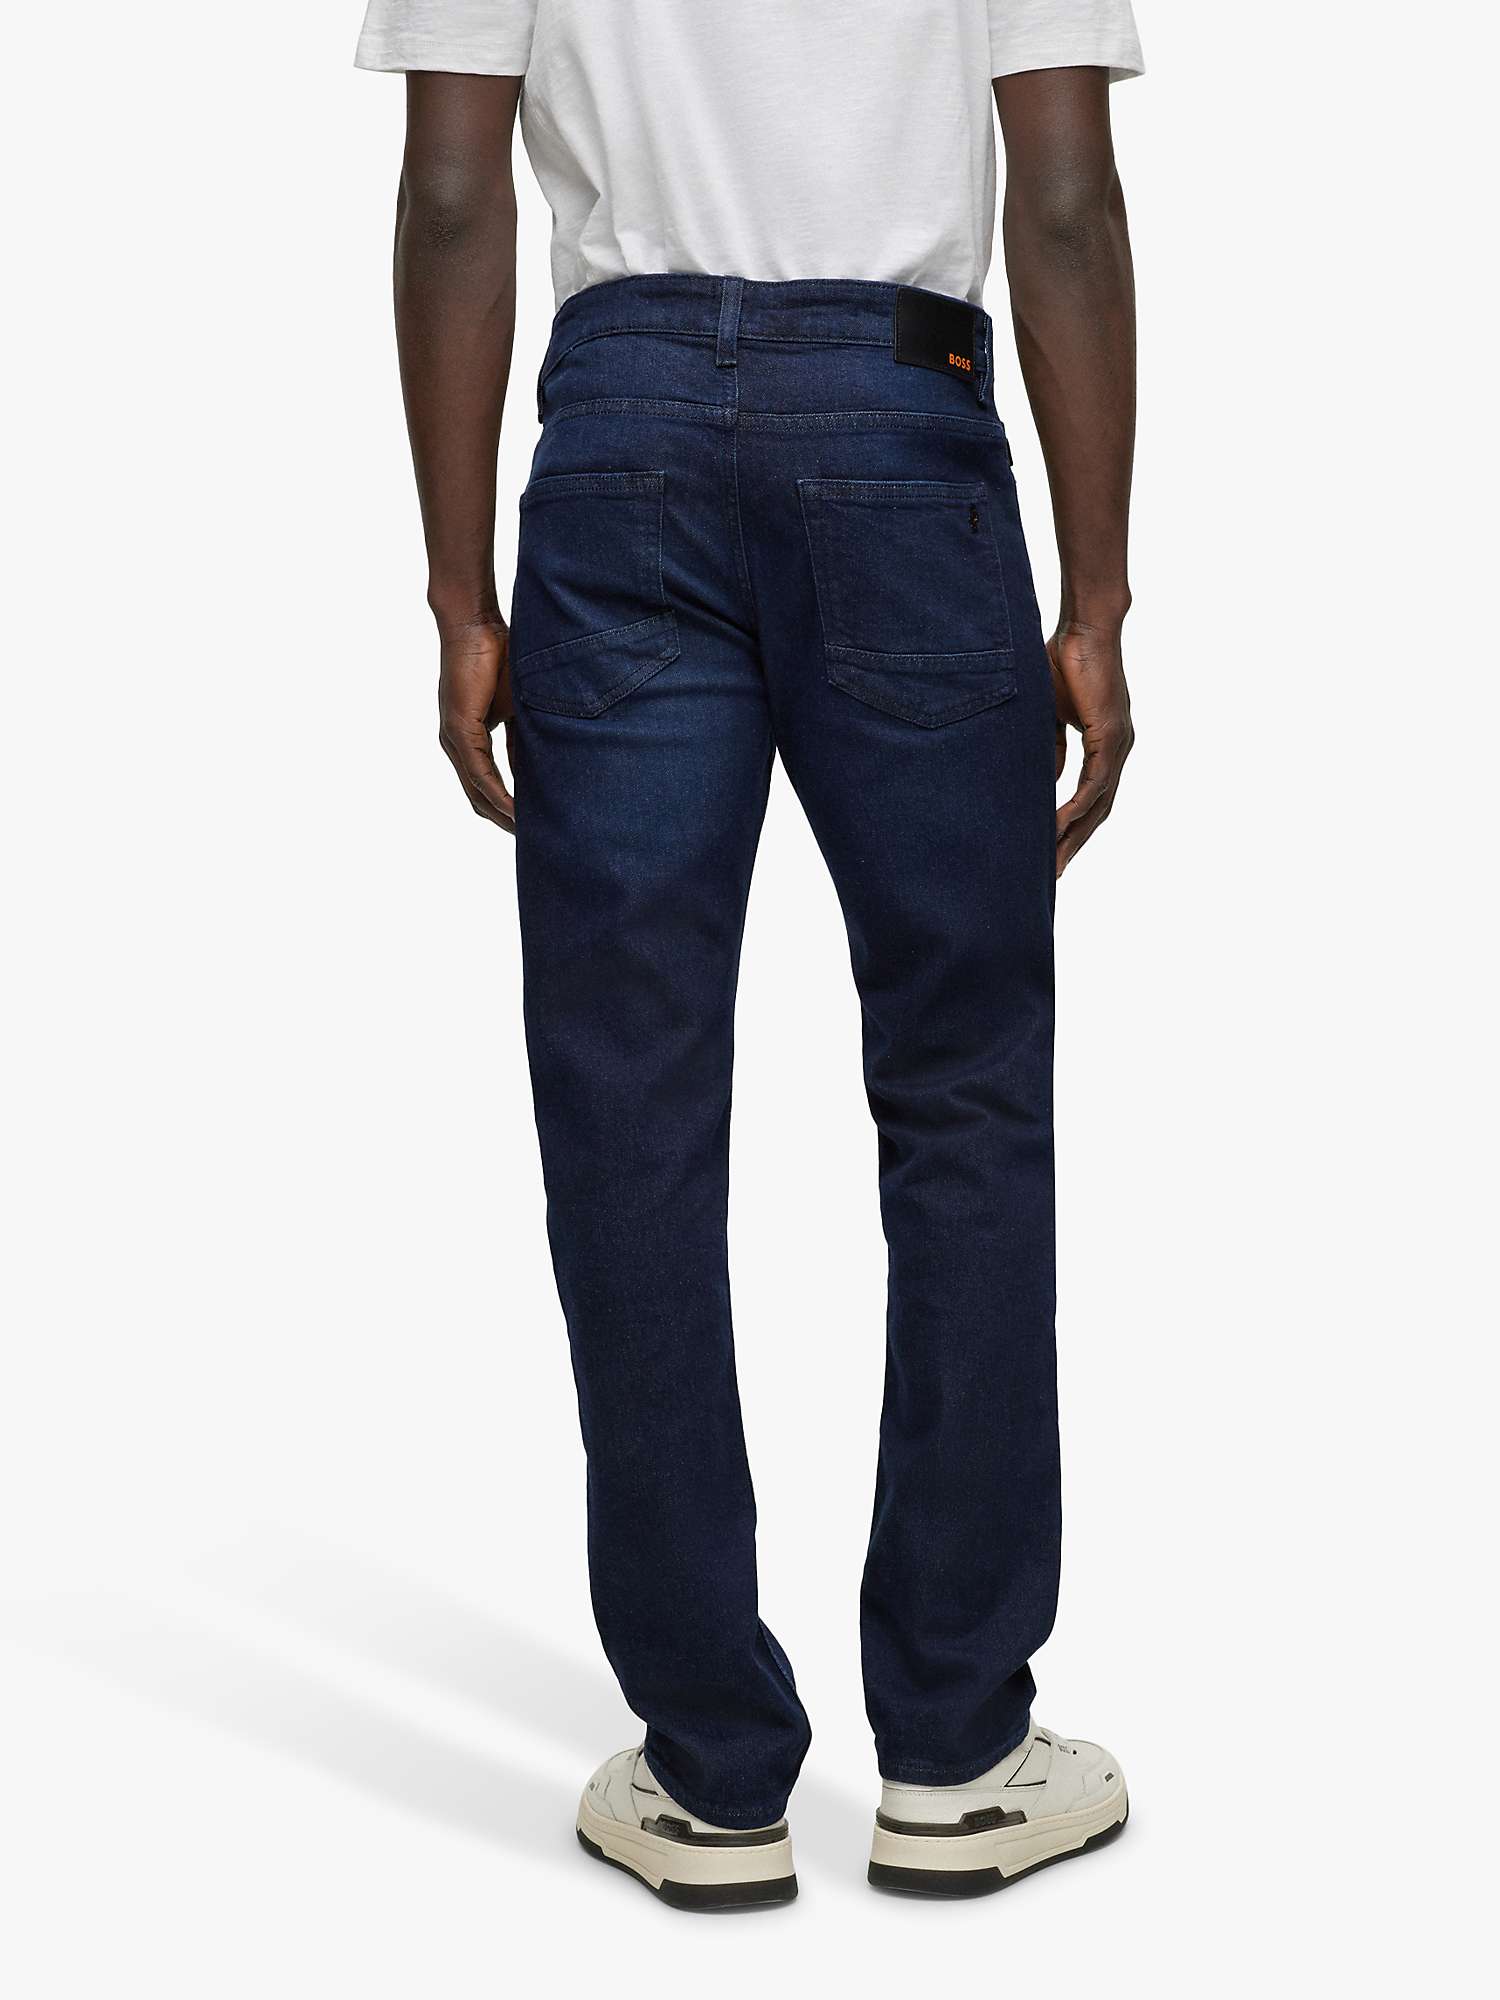 Buy HUGO BOSS Delaware Jeans Online at johnlewis.com